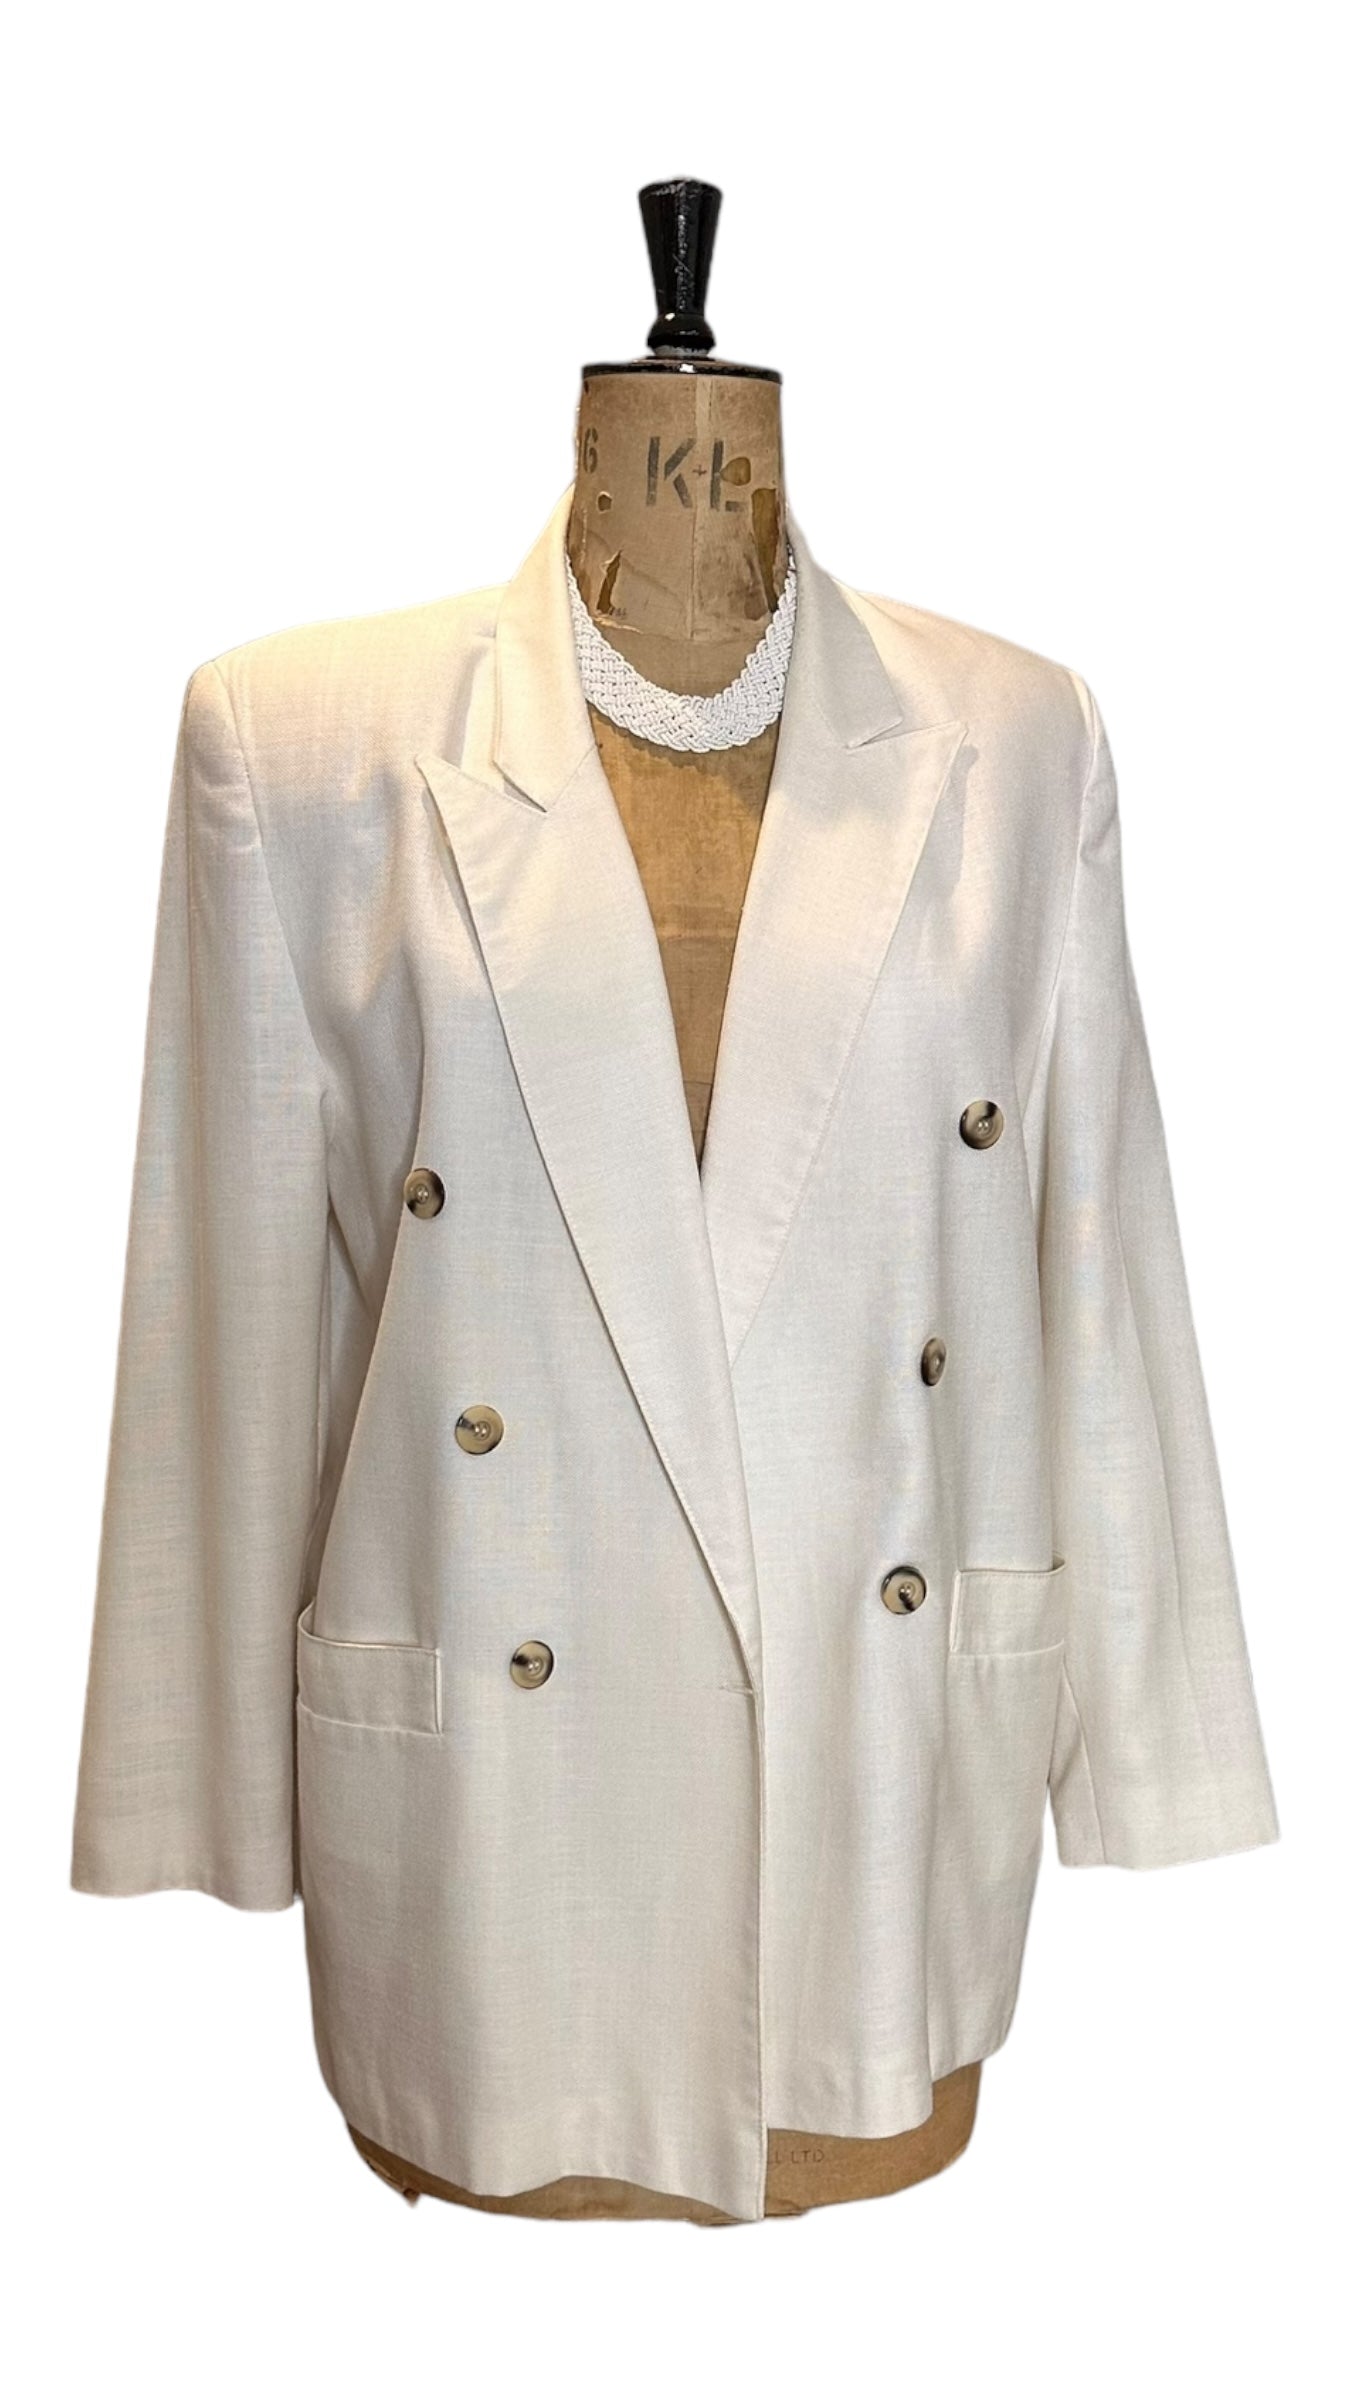 Vintage 80s White Jacket Size UK 16